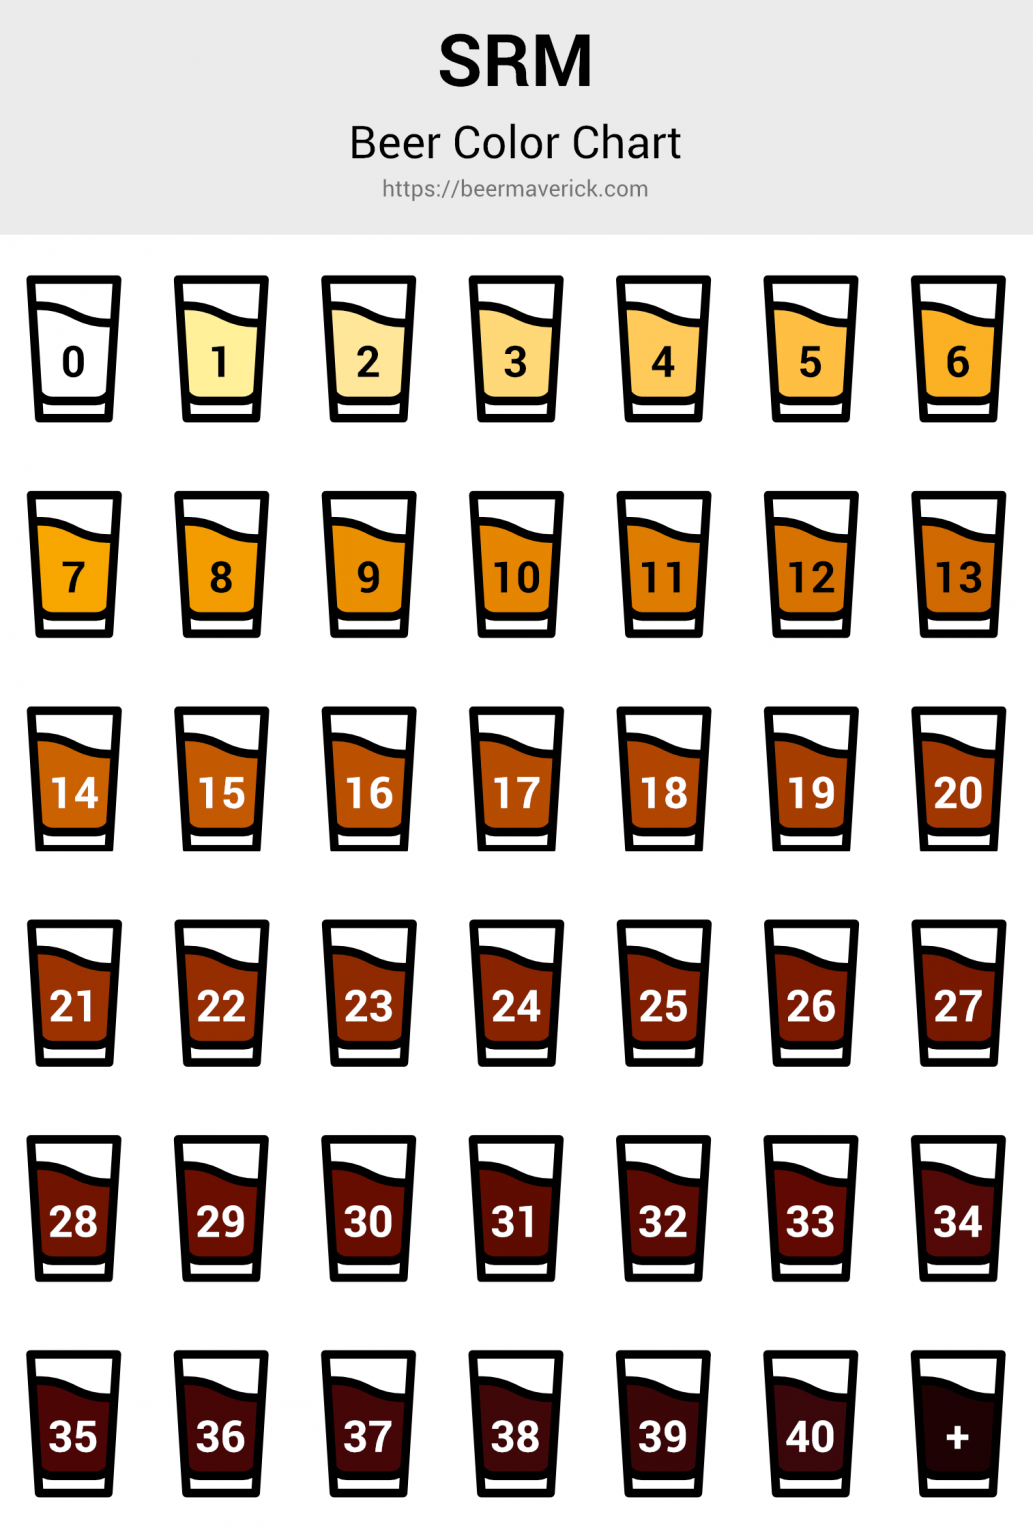 understanding-srm-beer-colors-chart-conversions-beer-maverick